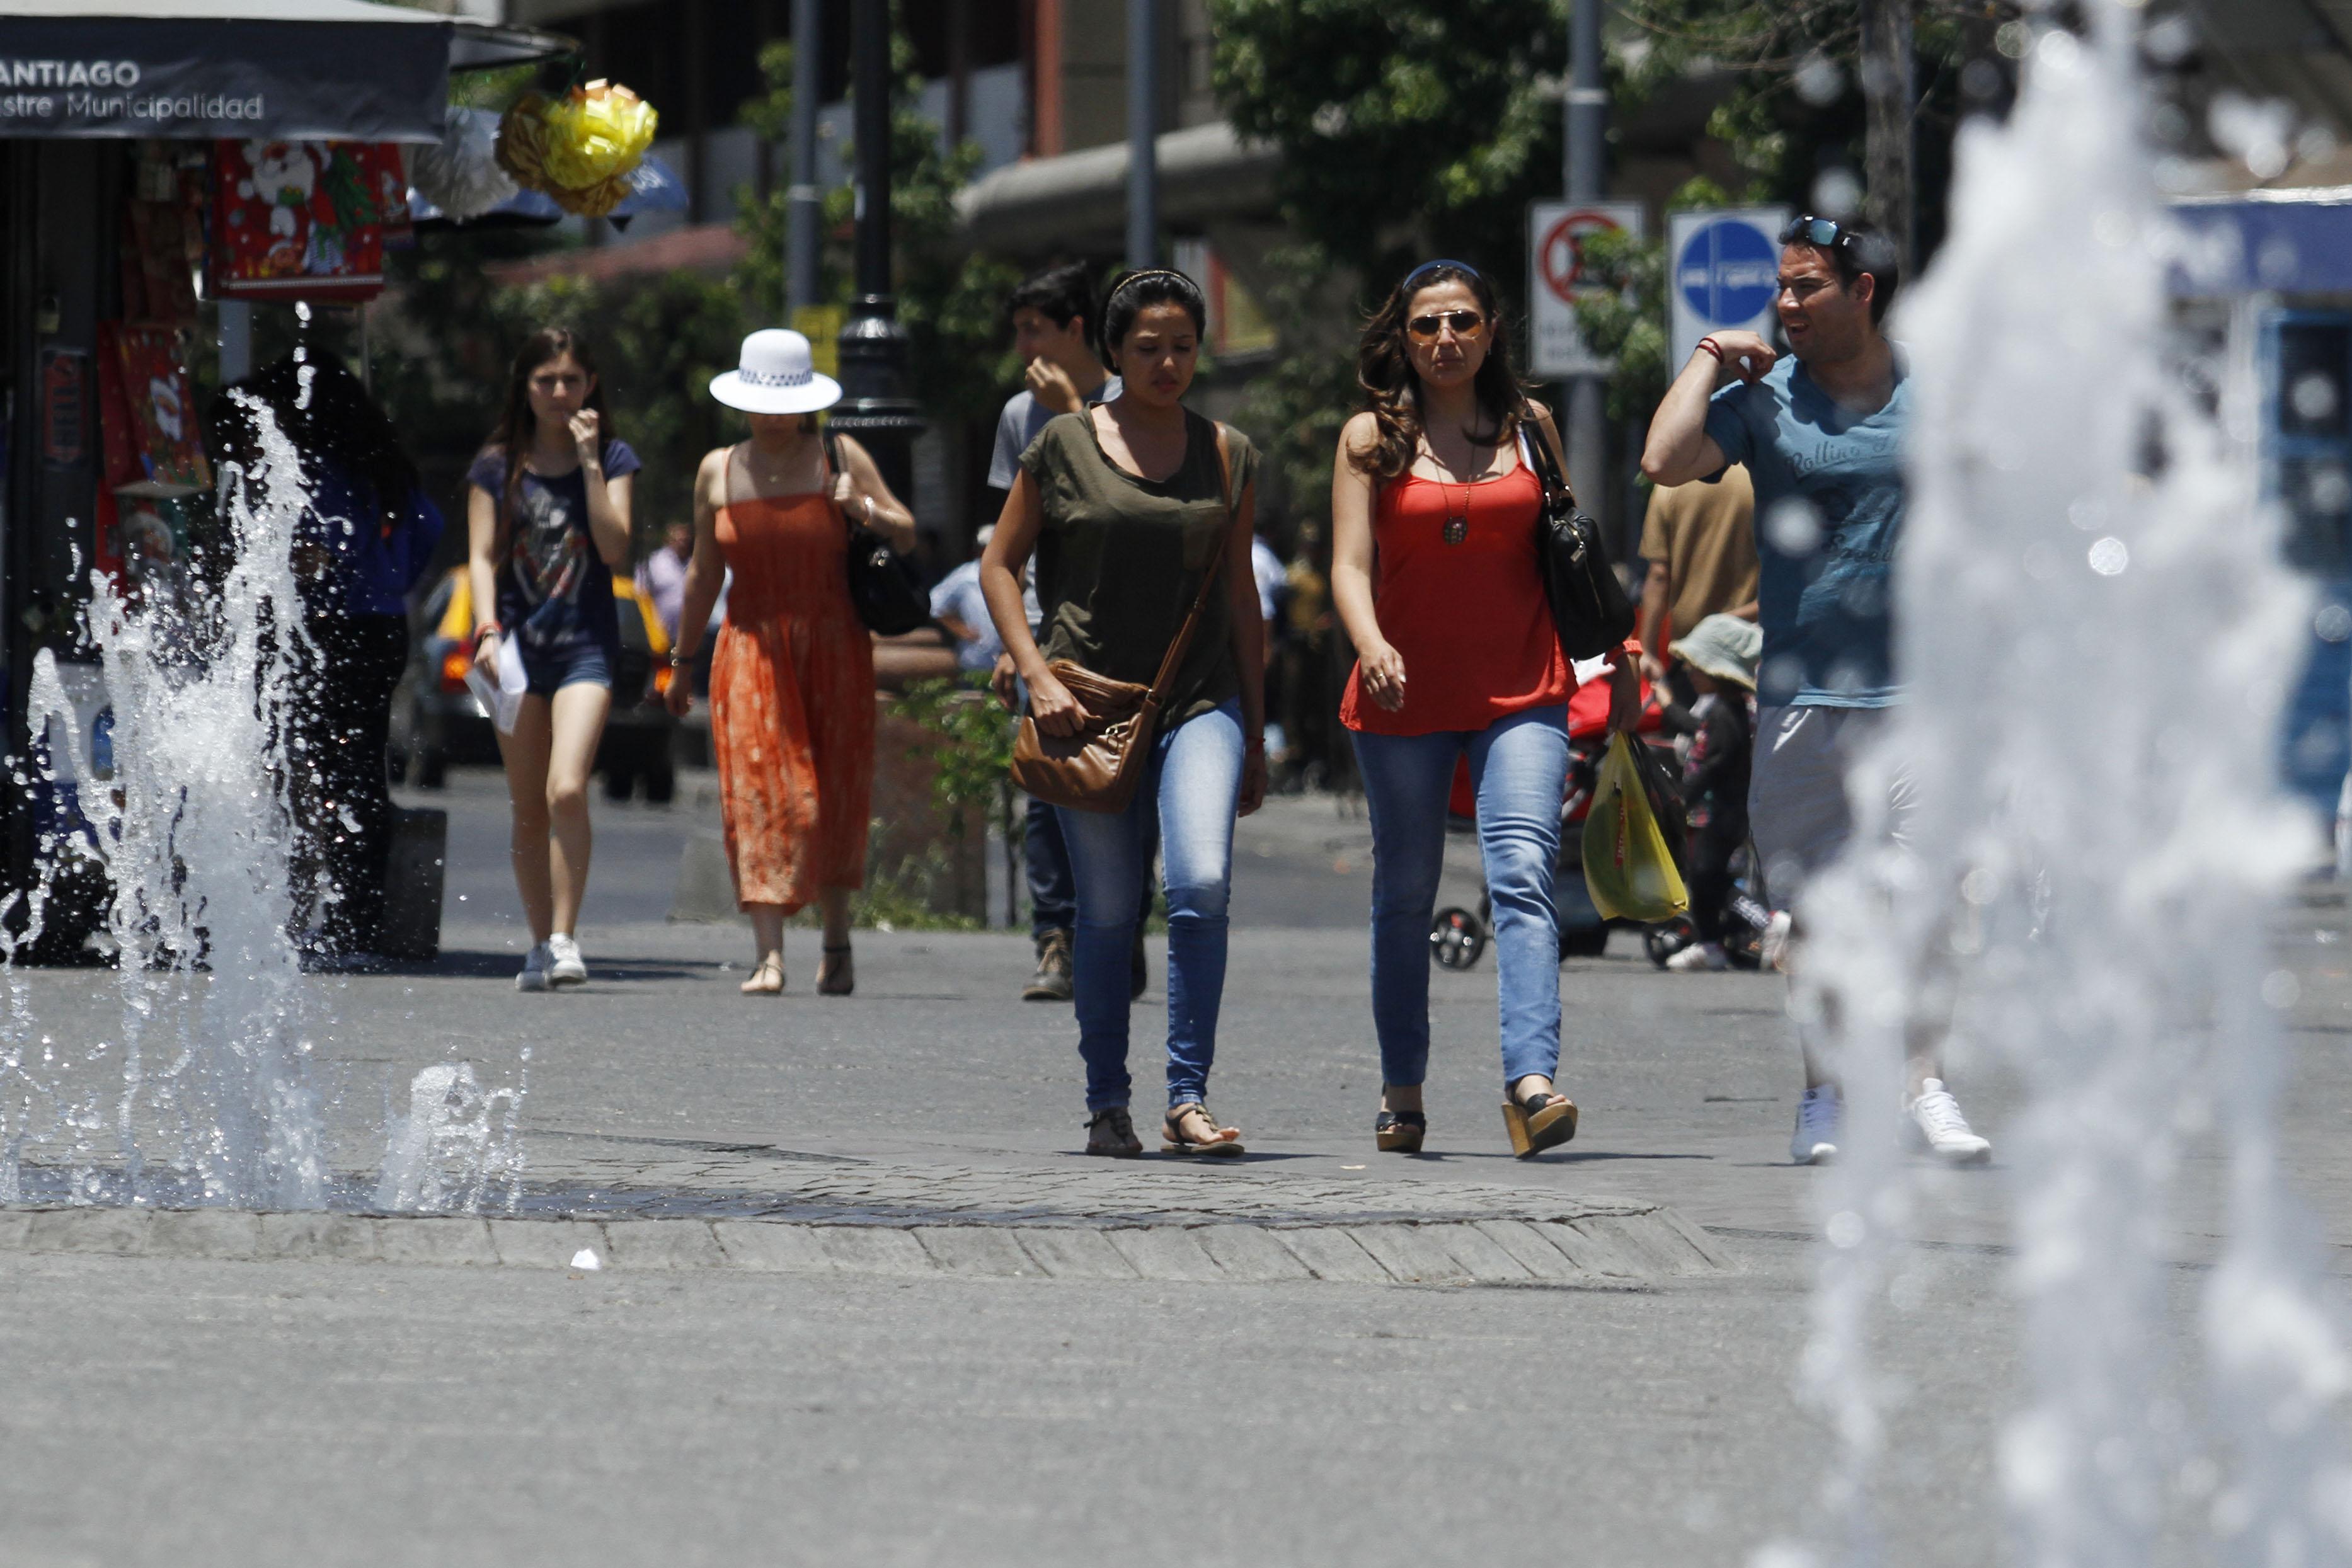 Altas temperaturas en Santiago / Imagen referencial Aton